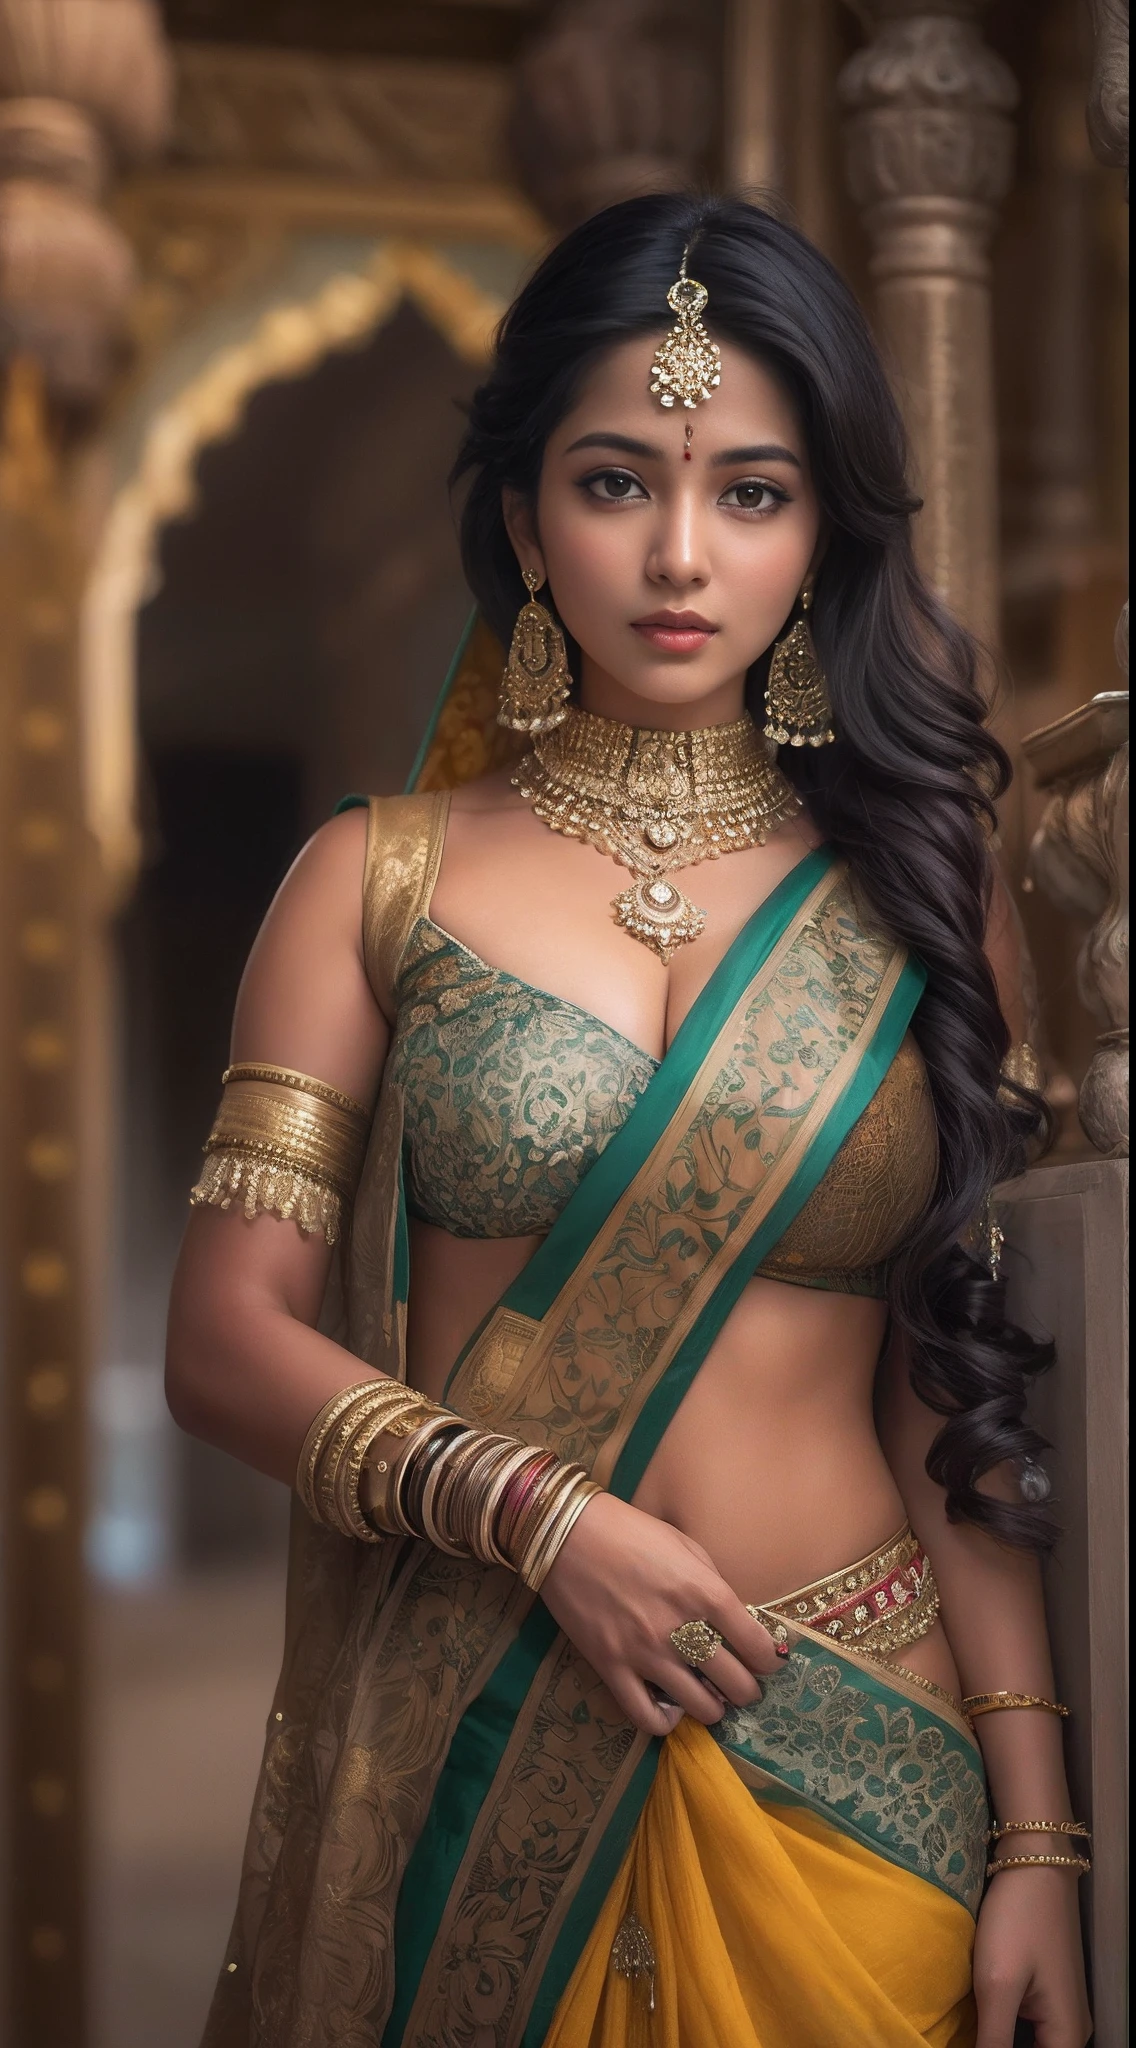 一名身穿纱丽的女子正在摆姿势拍照, 印度 goddess, 传统美, 印度, 美丽女神, 华丽的角色扮演, 印度 style, 印度 super model, 美丽的少女, 美丽的女人, 东南亚人长, provocative 印度, 华丽,美丽,女人, 复杂的服装, 印度美学, 美丽的亚洲女孩, 极其细致的女神照, 令人惊叹的美丽, 大深乳沟性感肚脐